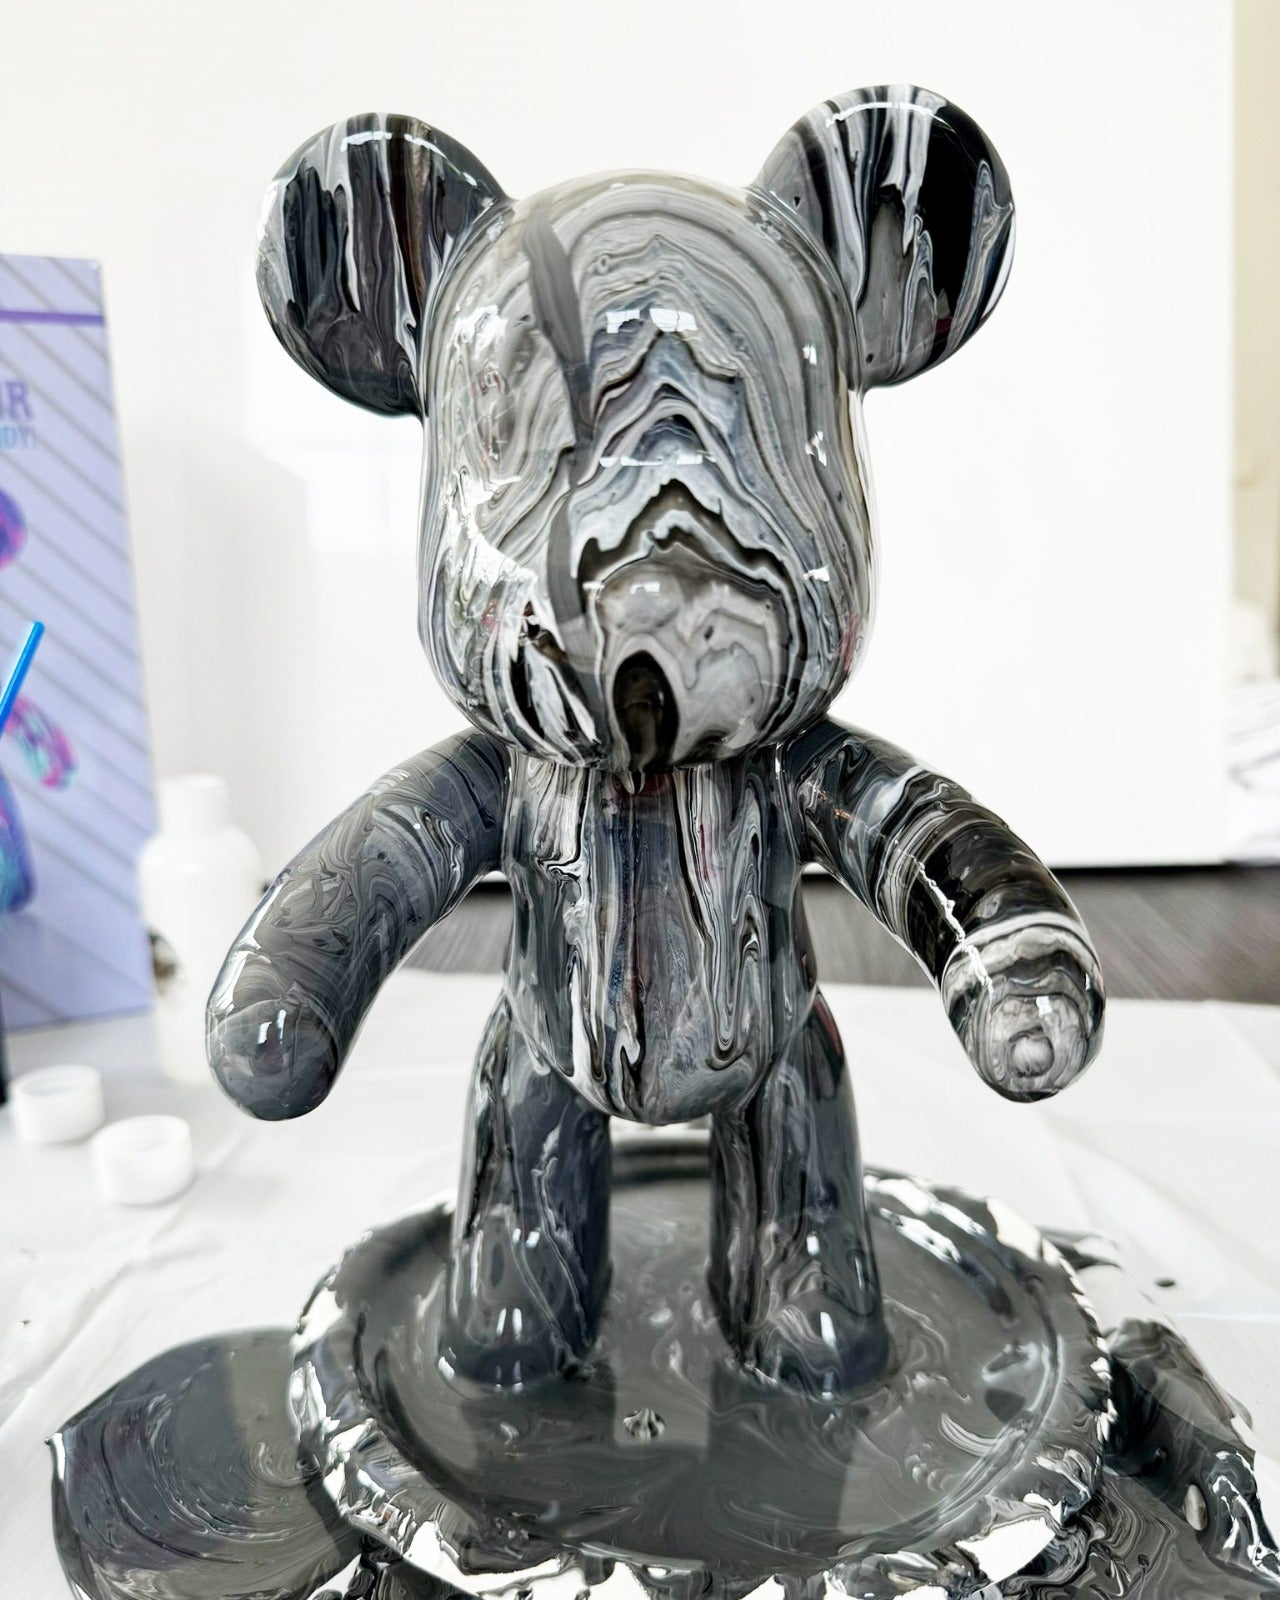 Kit de peinture pouring fluide art - Ours Teddy Bear Noir /Blanc /Gris JOY!